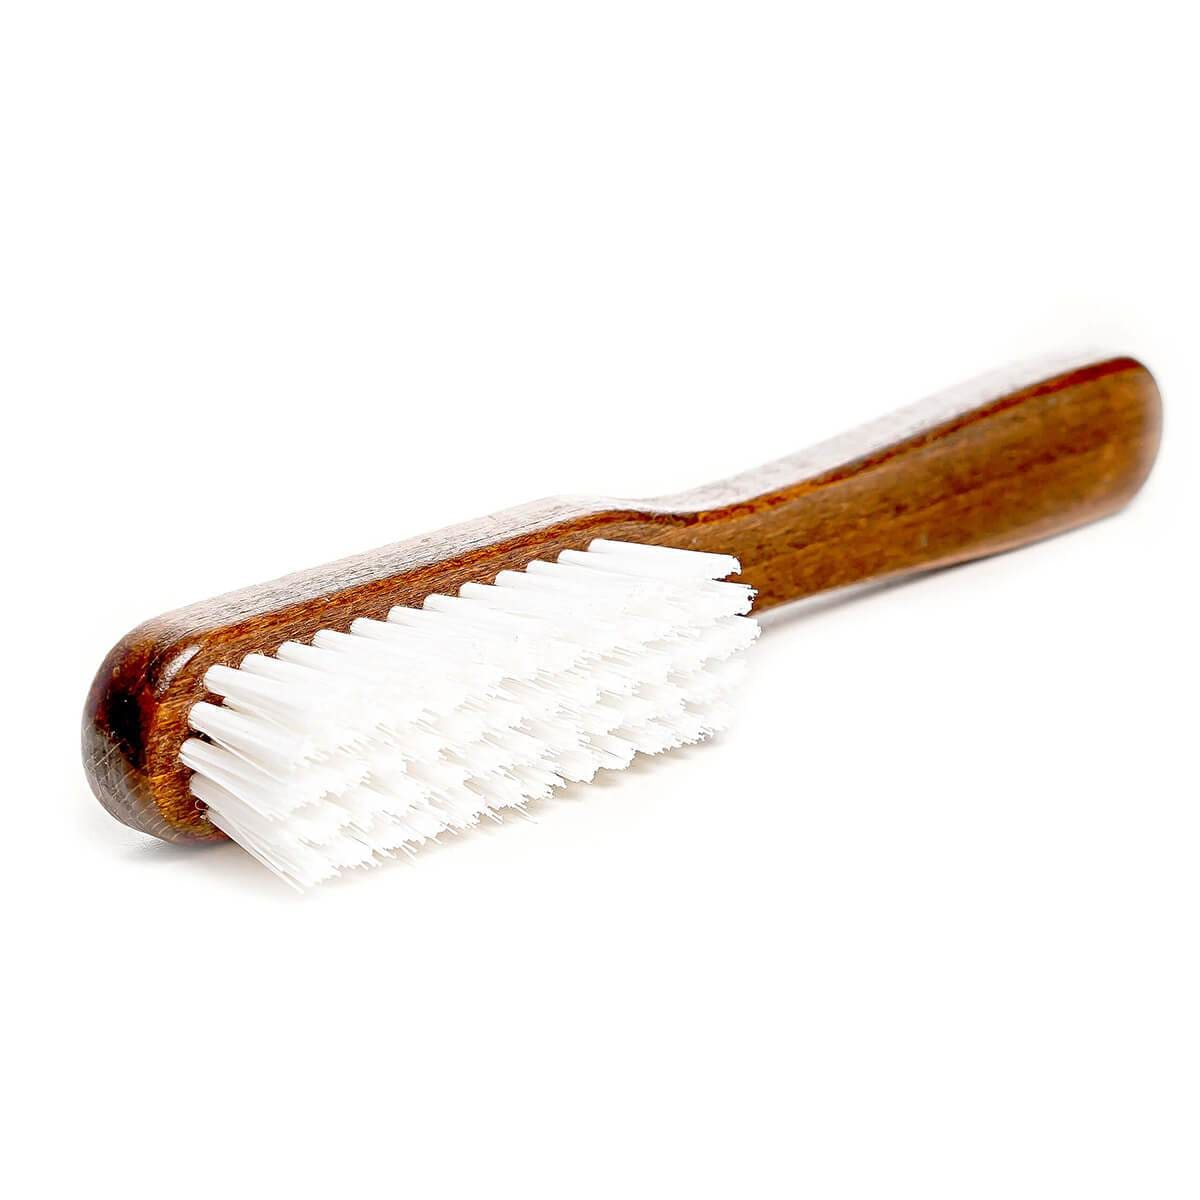 Textile brushes - Shoe brushes